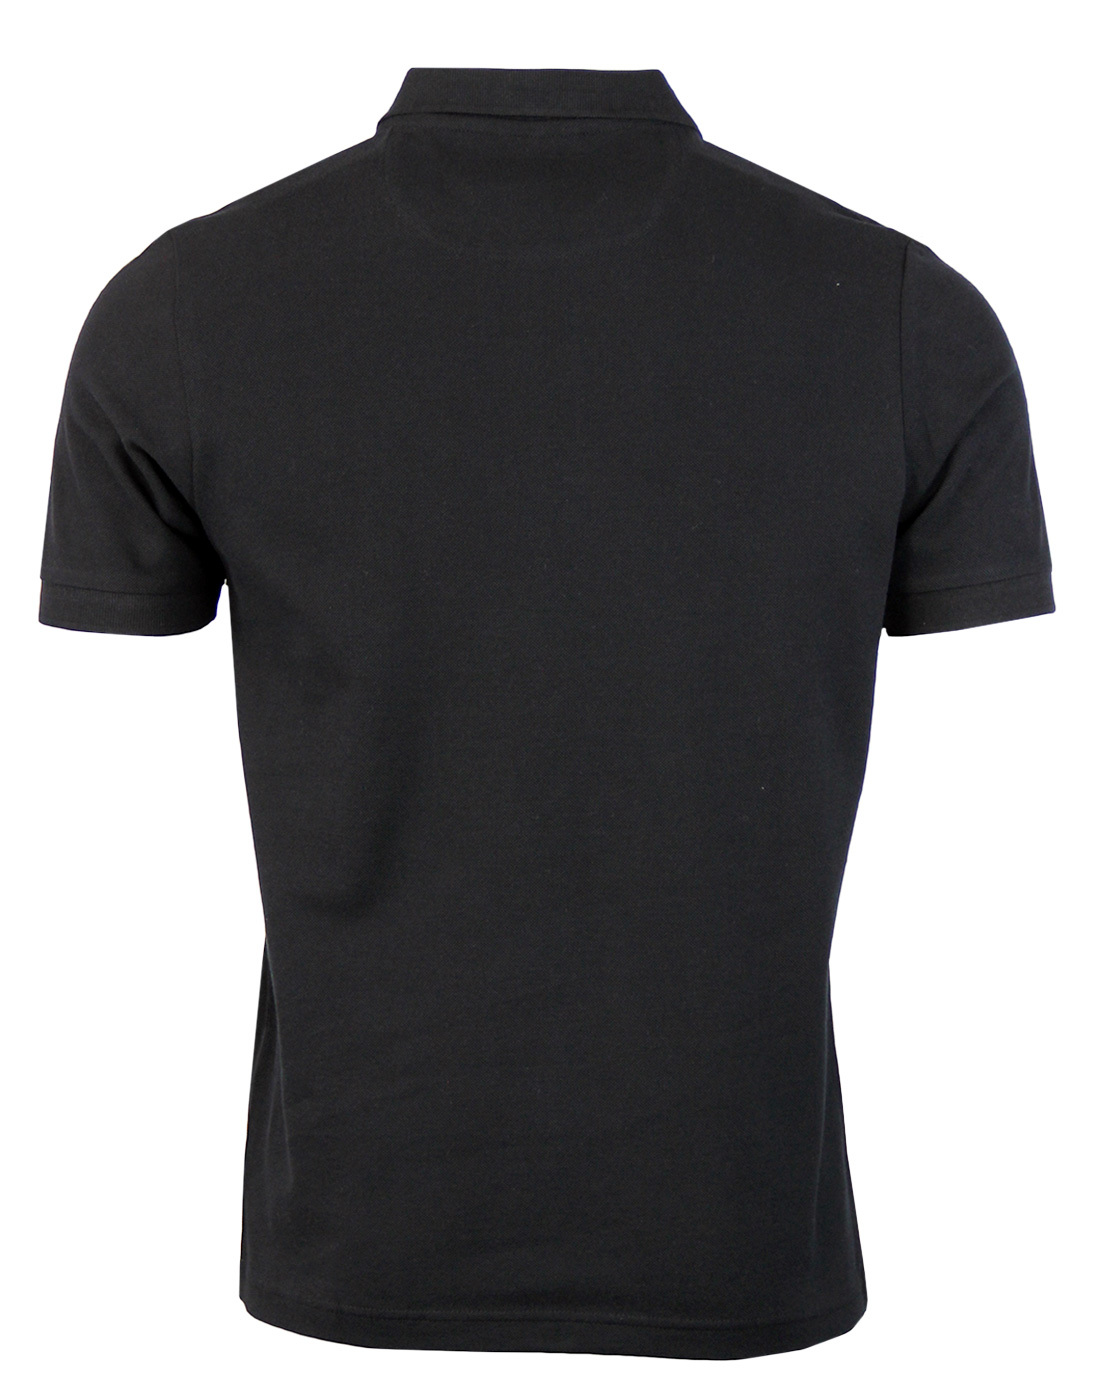 FARAH Blaney 60s Retro Mod Pique Polo Shirt in Black